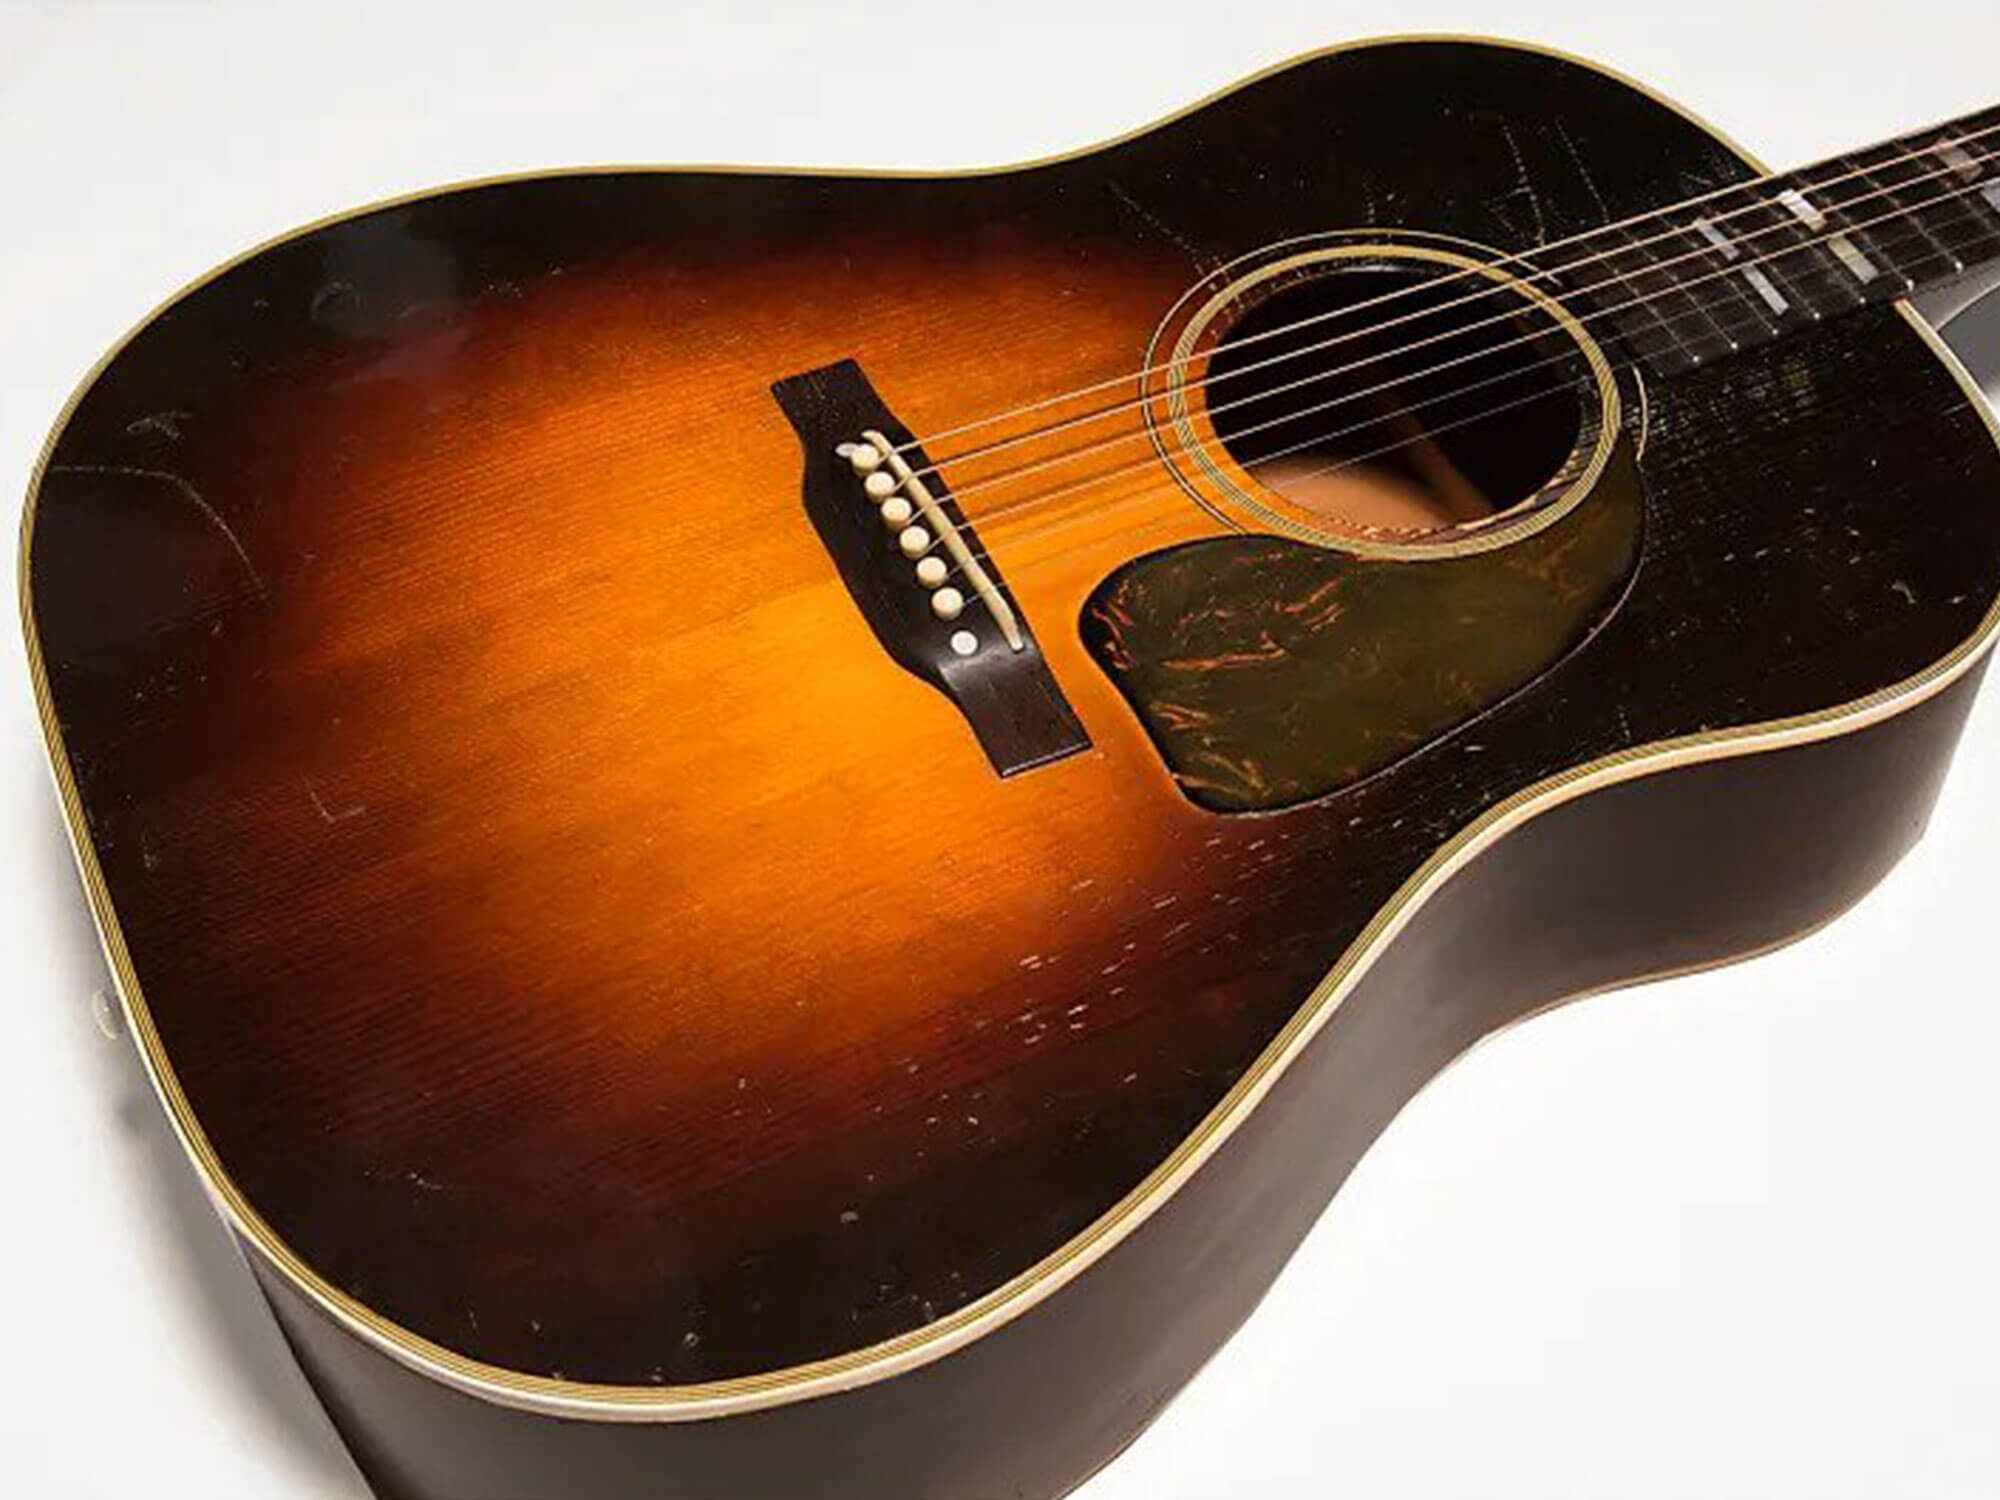 1943 Gibson Southern Jumbo acoustic